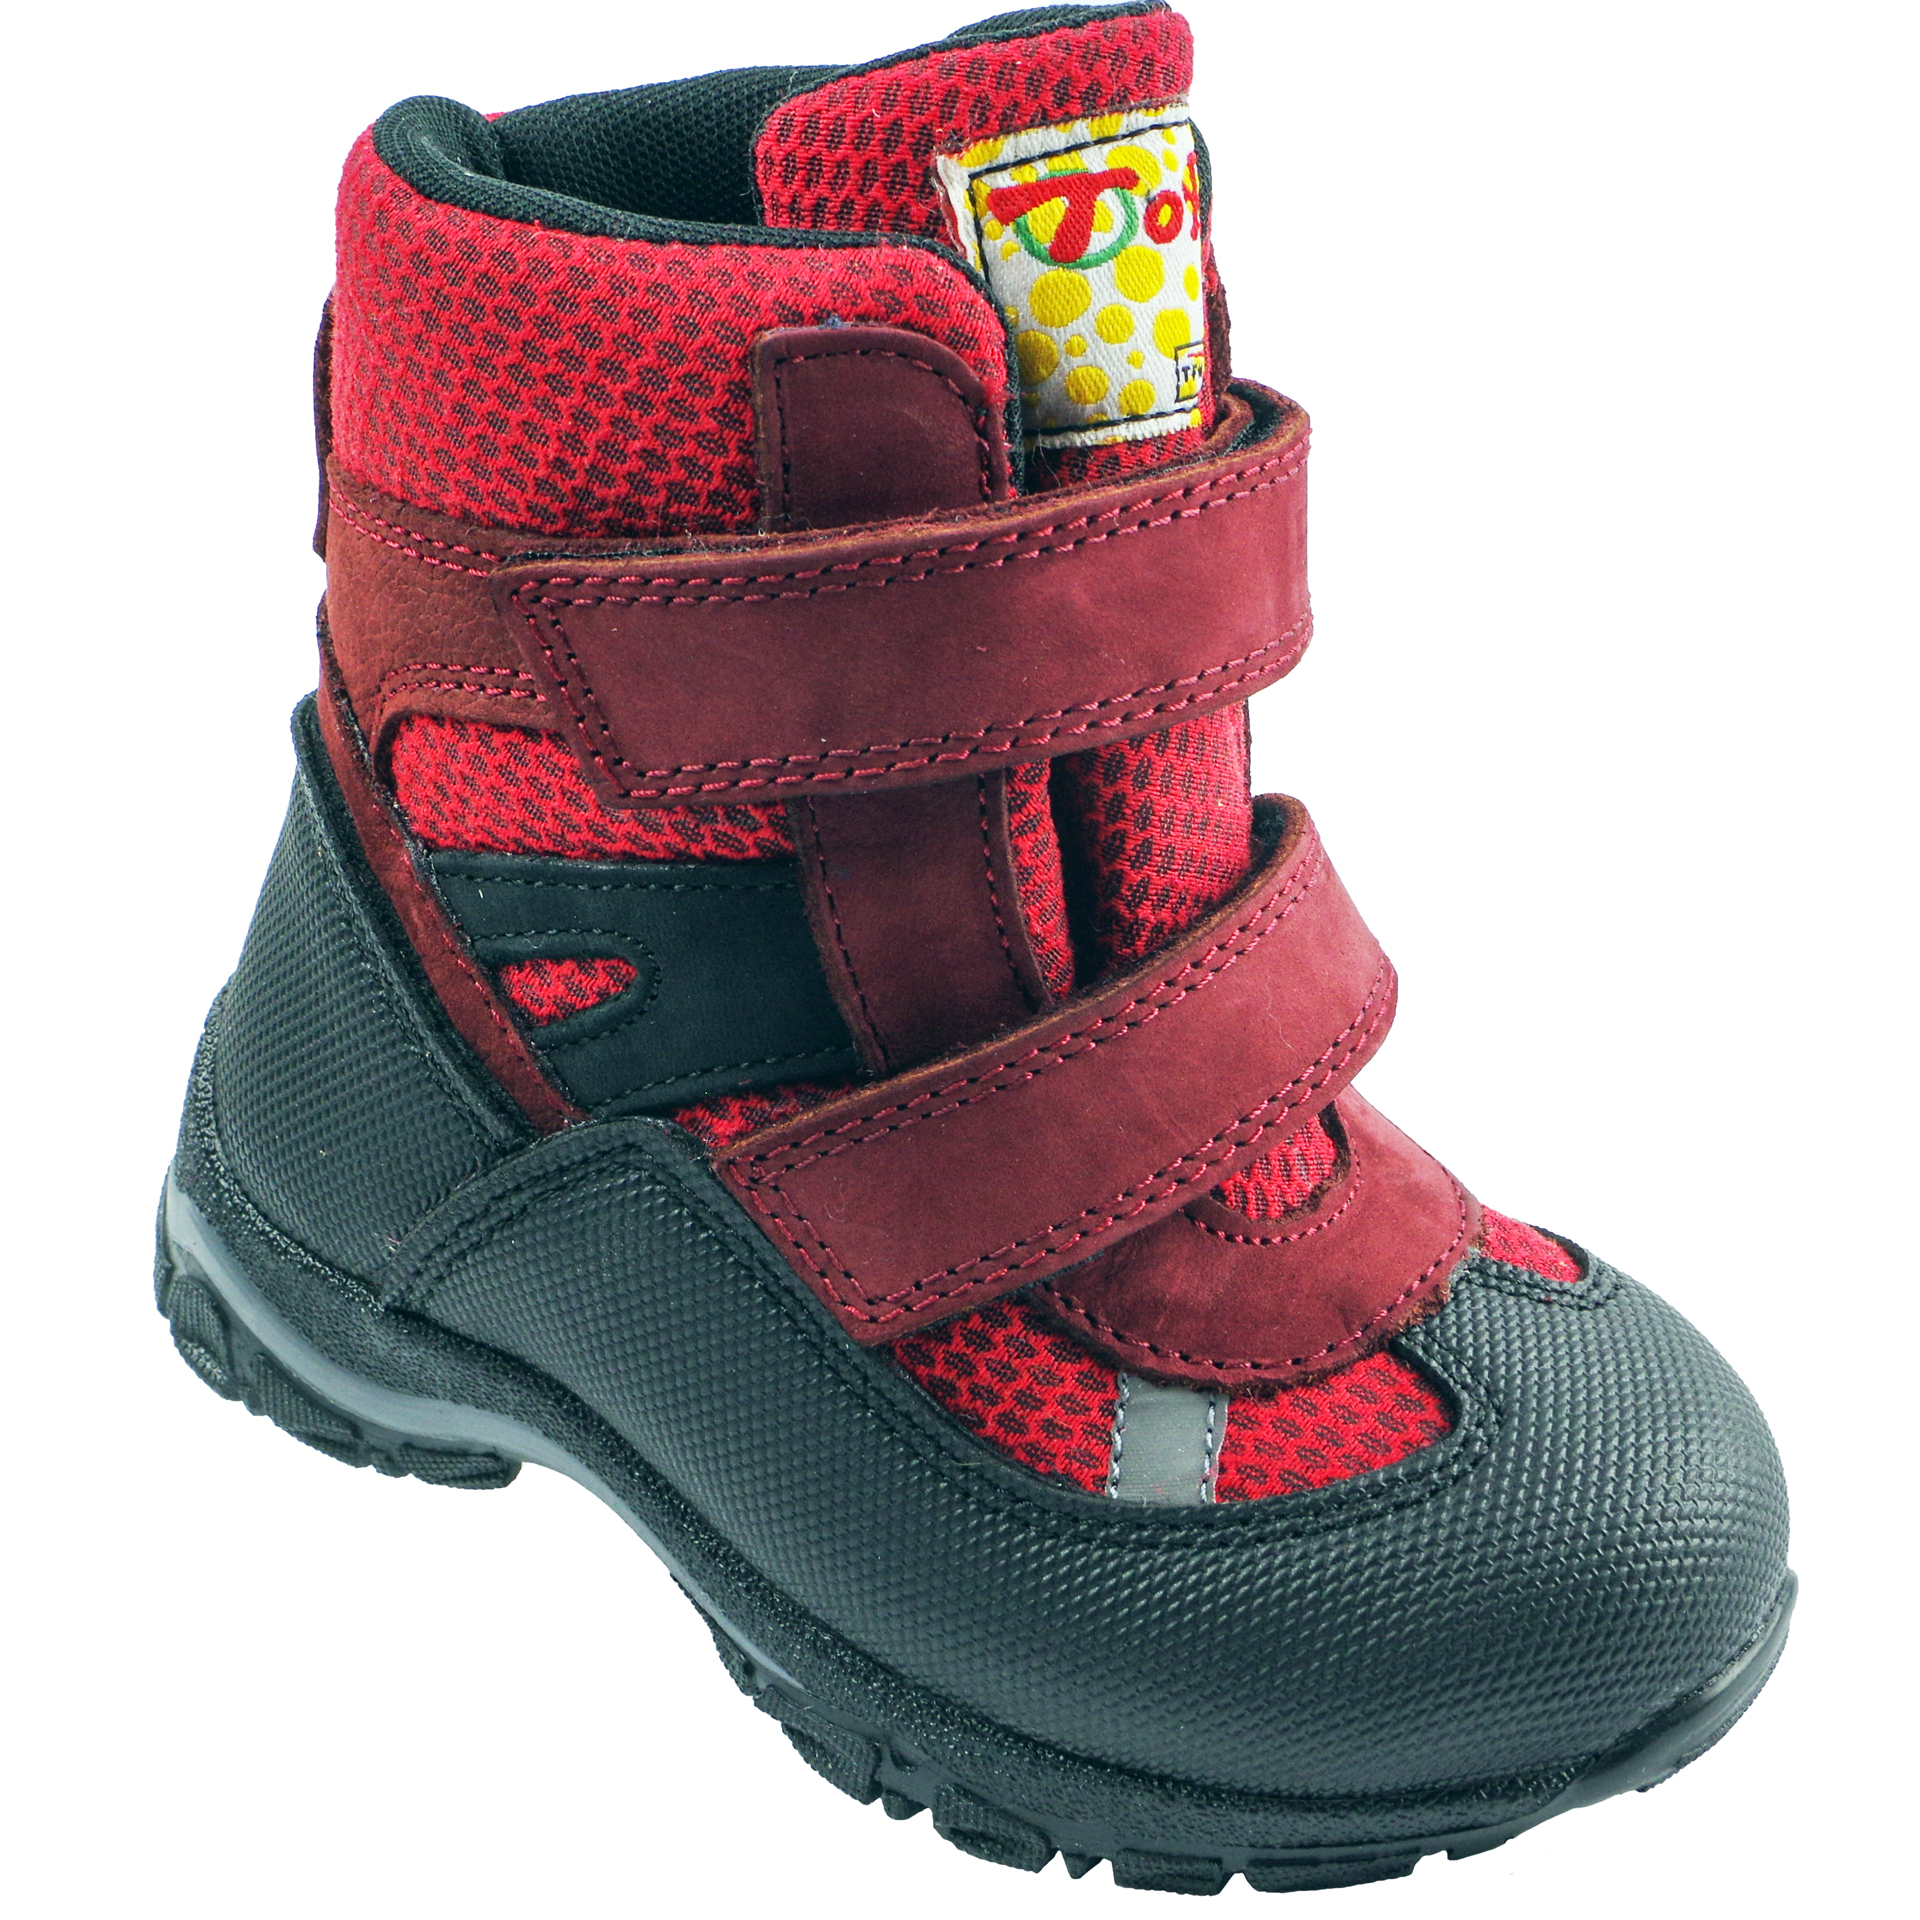 Мембранні зимові черевики (2145) для дівчинки, матеріал Мембрана, Червоний колір, 22-25 розміри – Sole Kids